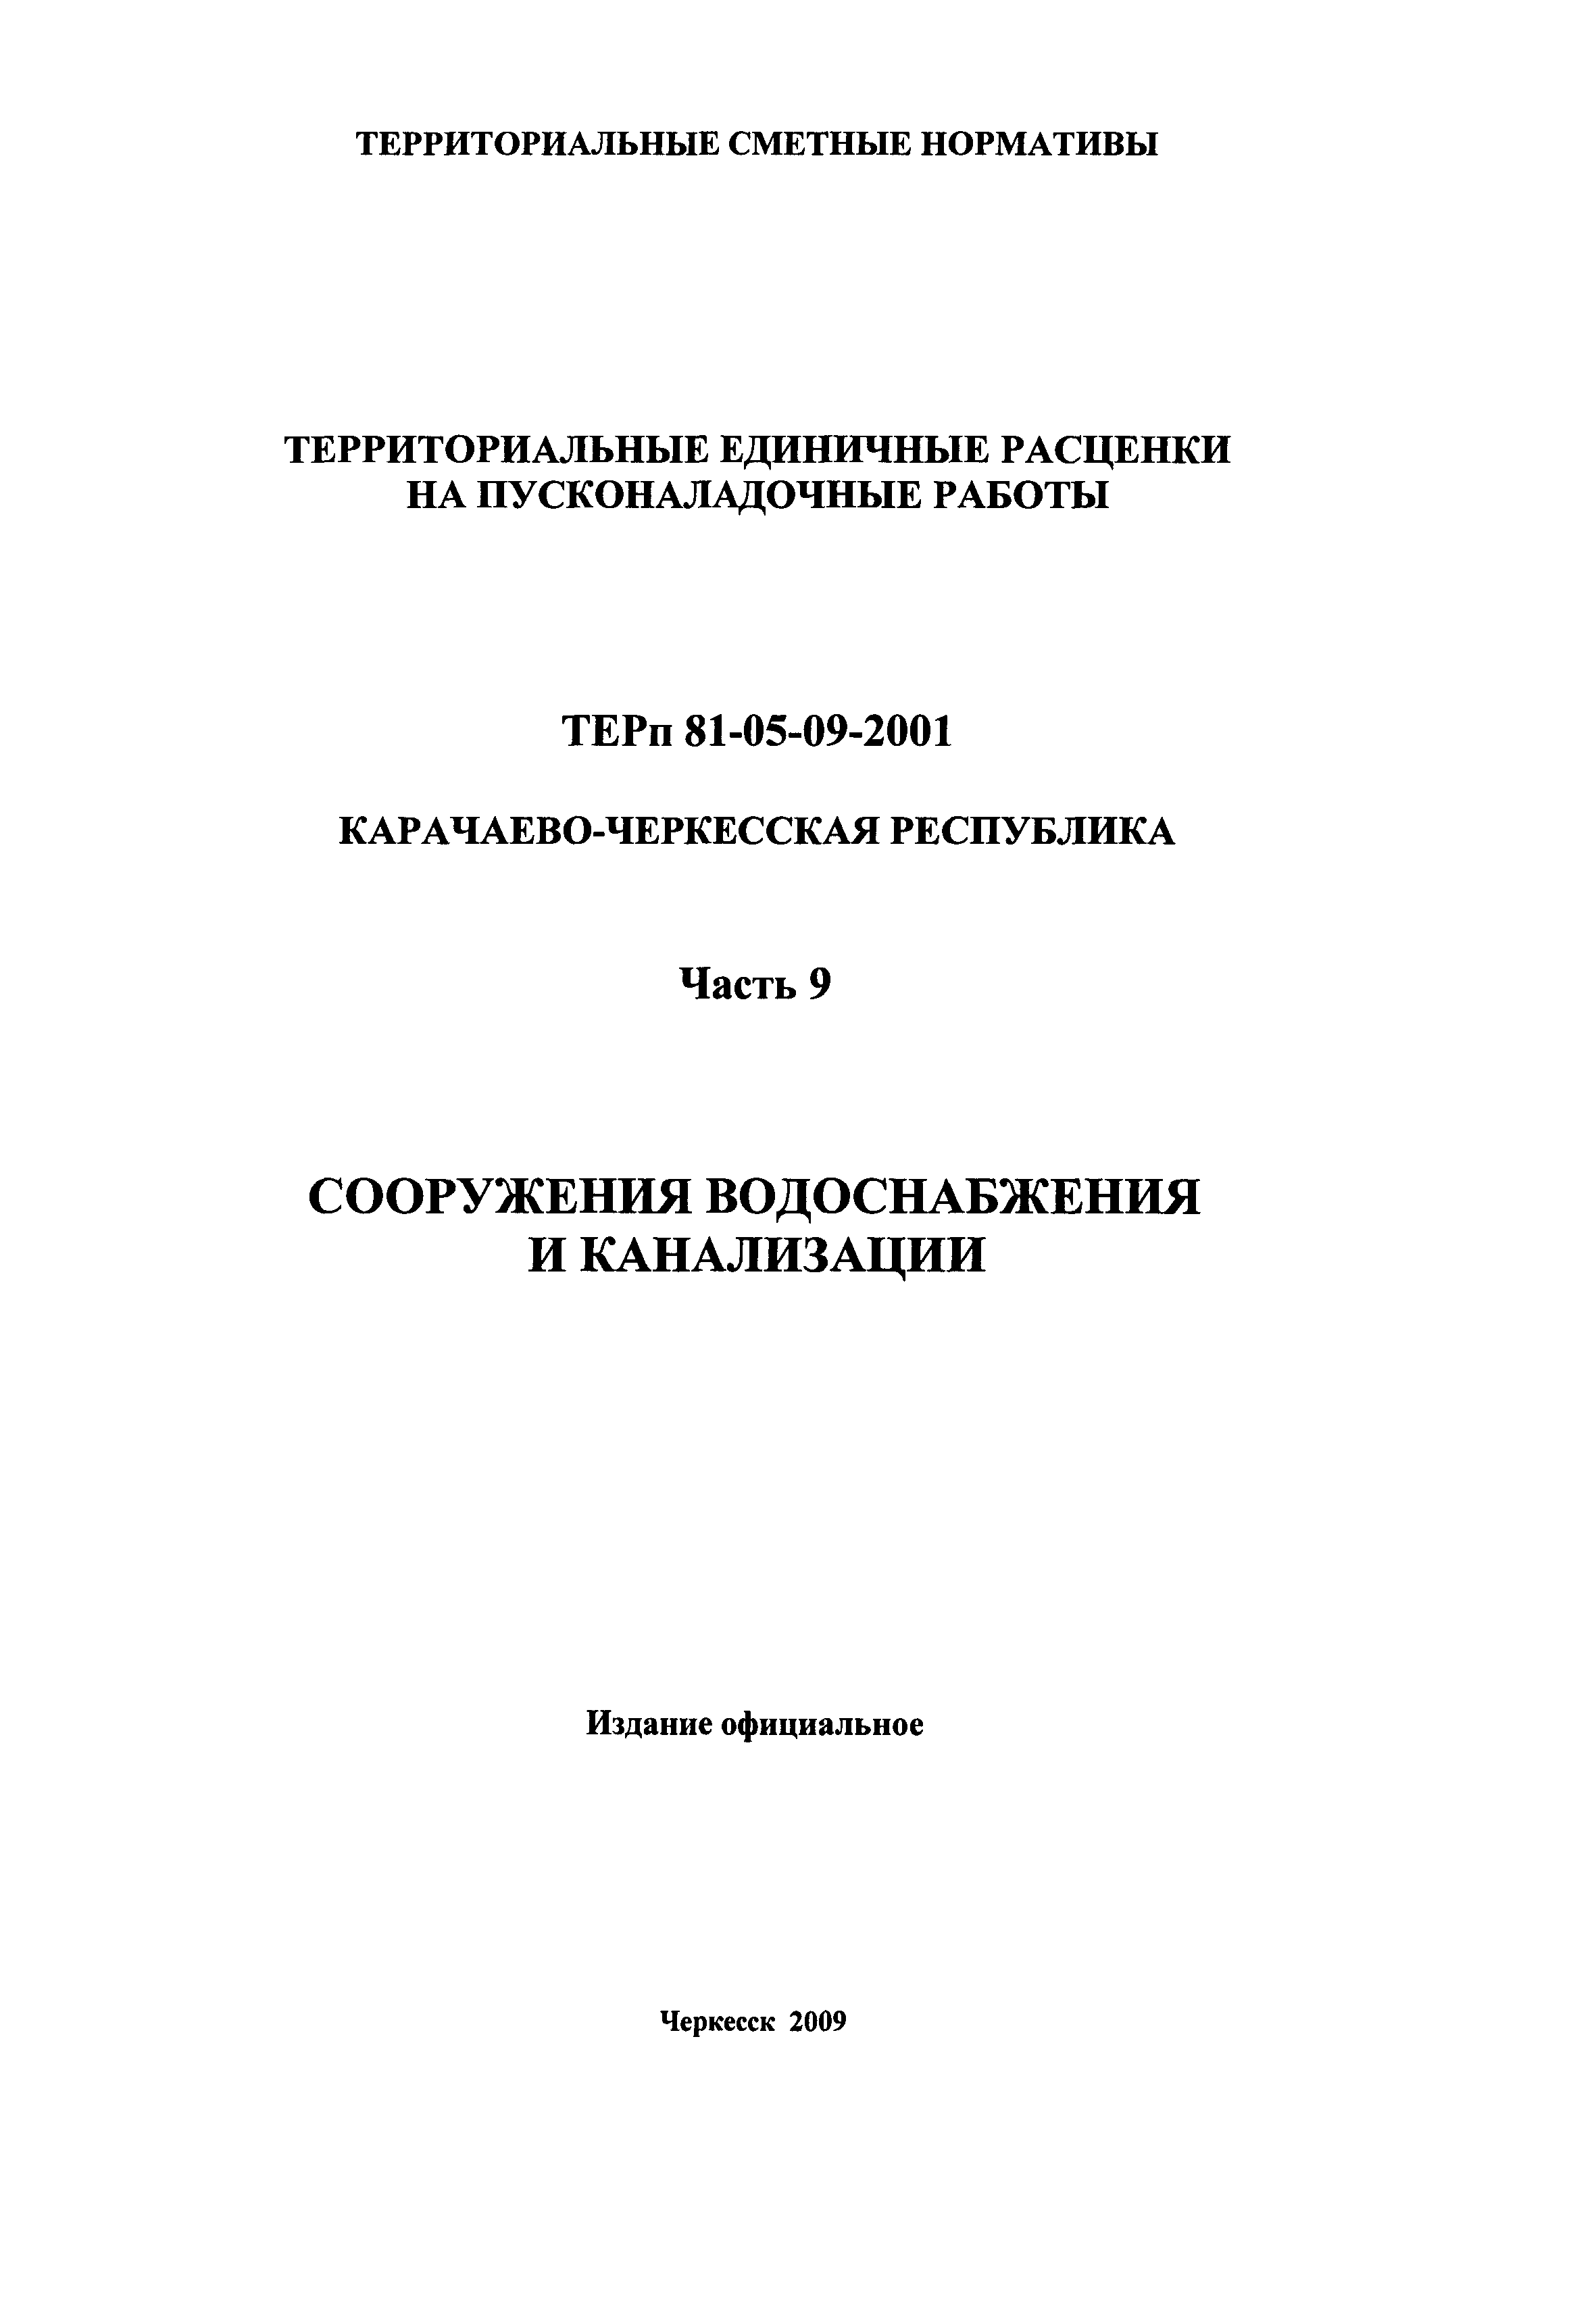 ТЕРп Карачаево-Черкесская Республика 09-2001